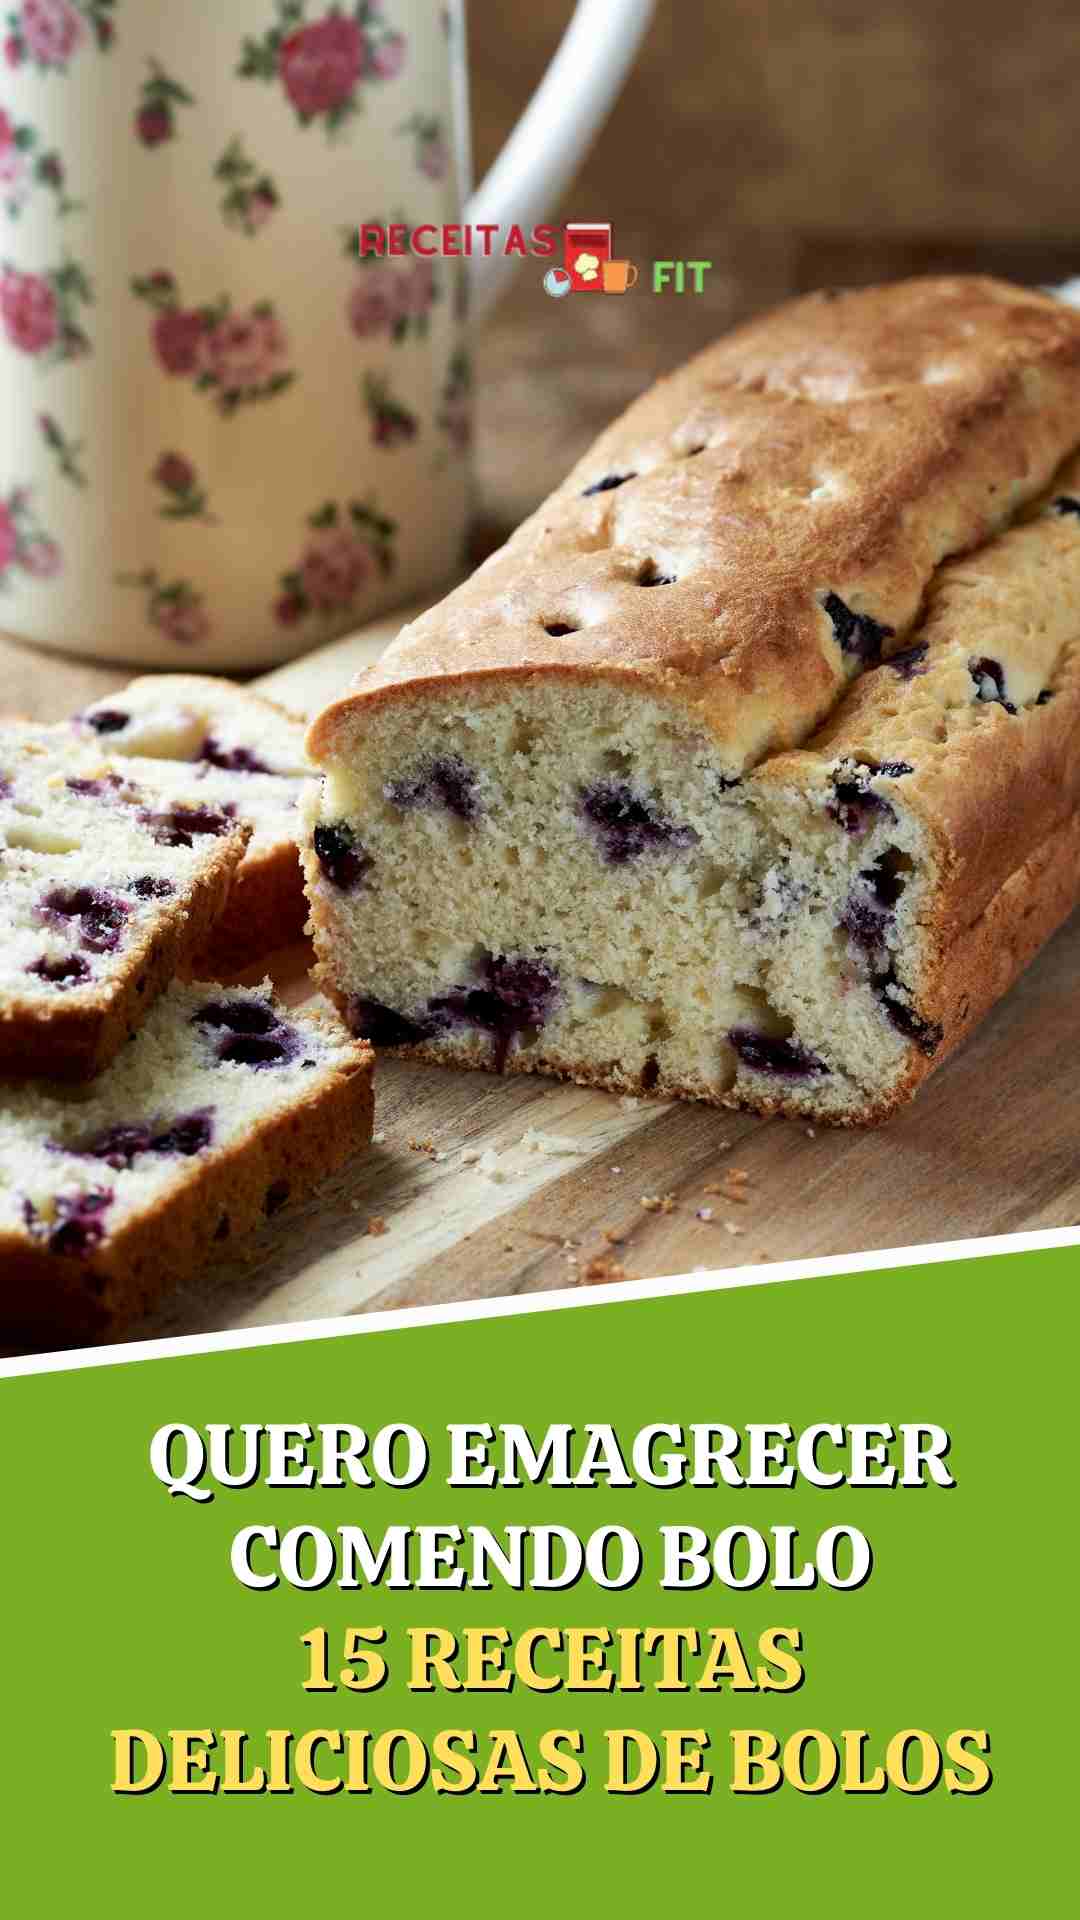 You are currently viewing Quero emagrecer comendo bolo – 15 Receitas de bolos low carb e fit